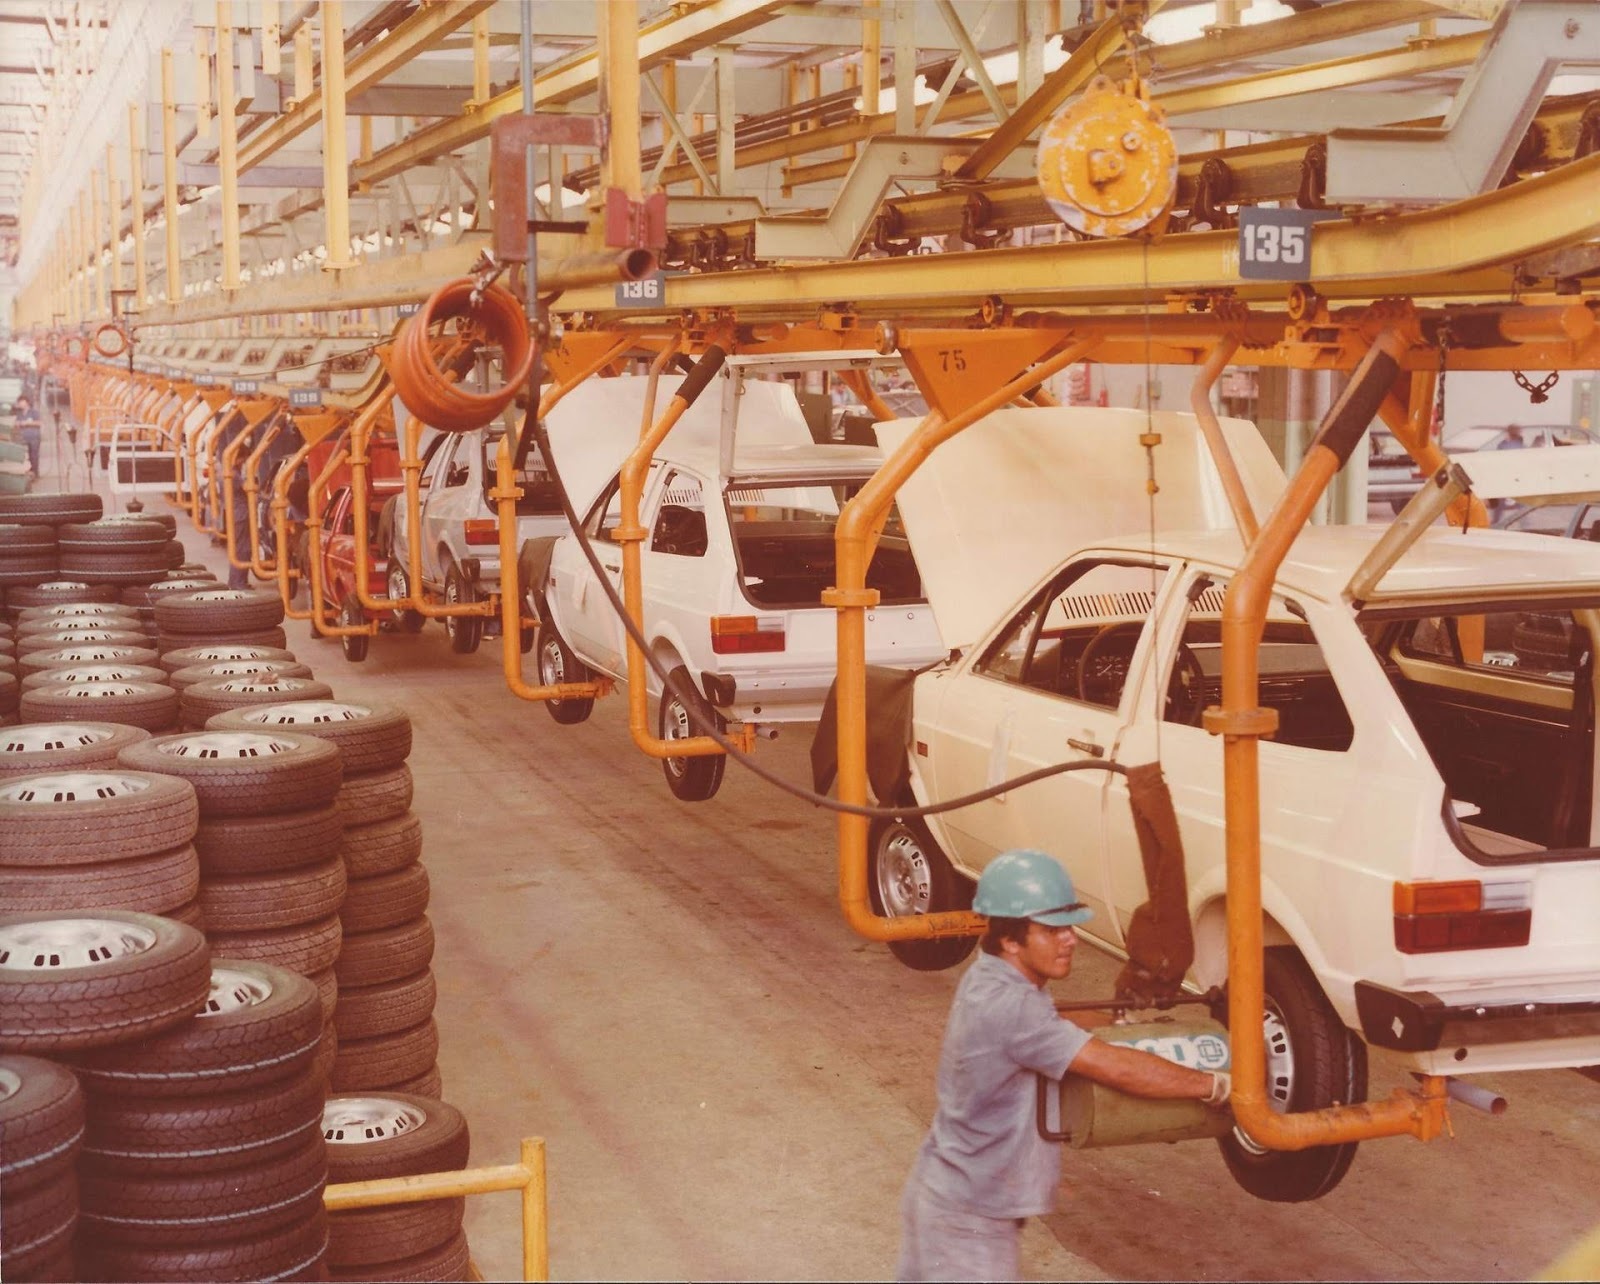 Volkswagen confirma o fim da produção do up! na fábrica de Taubaté